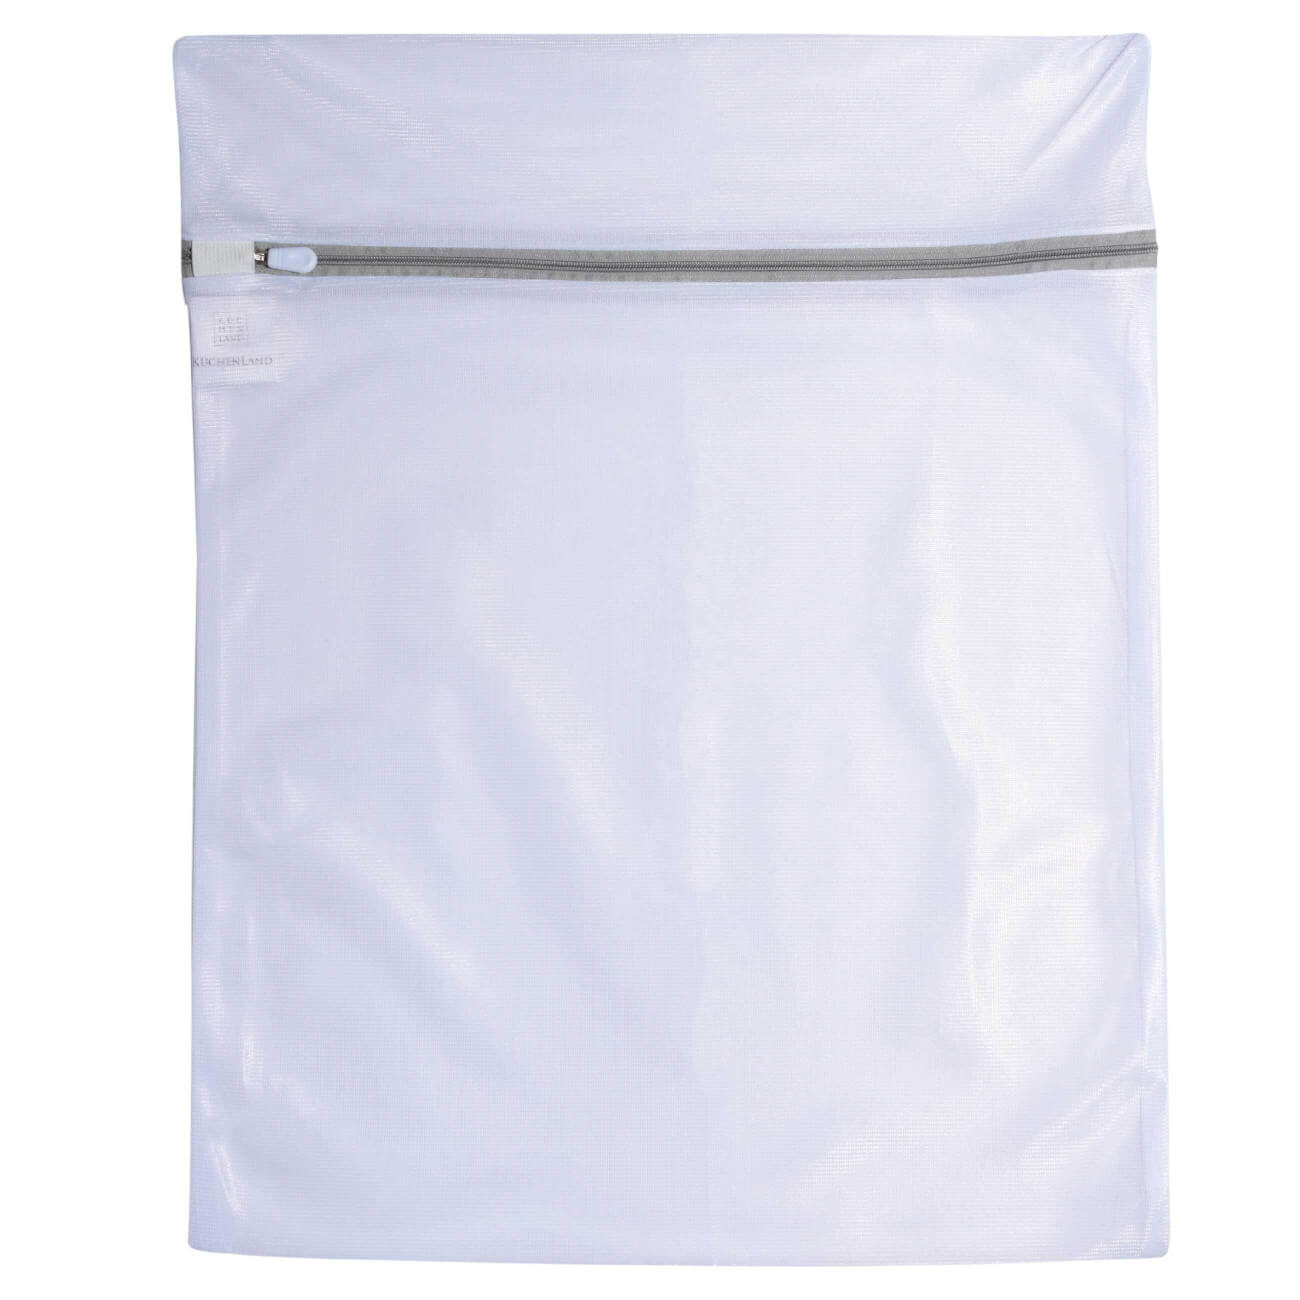 Мешок для стирки одежды, 40х50 см, полиэстер, бело-серый, Safety plus мешок для стирки нижнего белья 38 см полиэстер safety plus